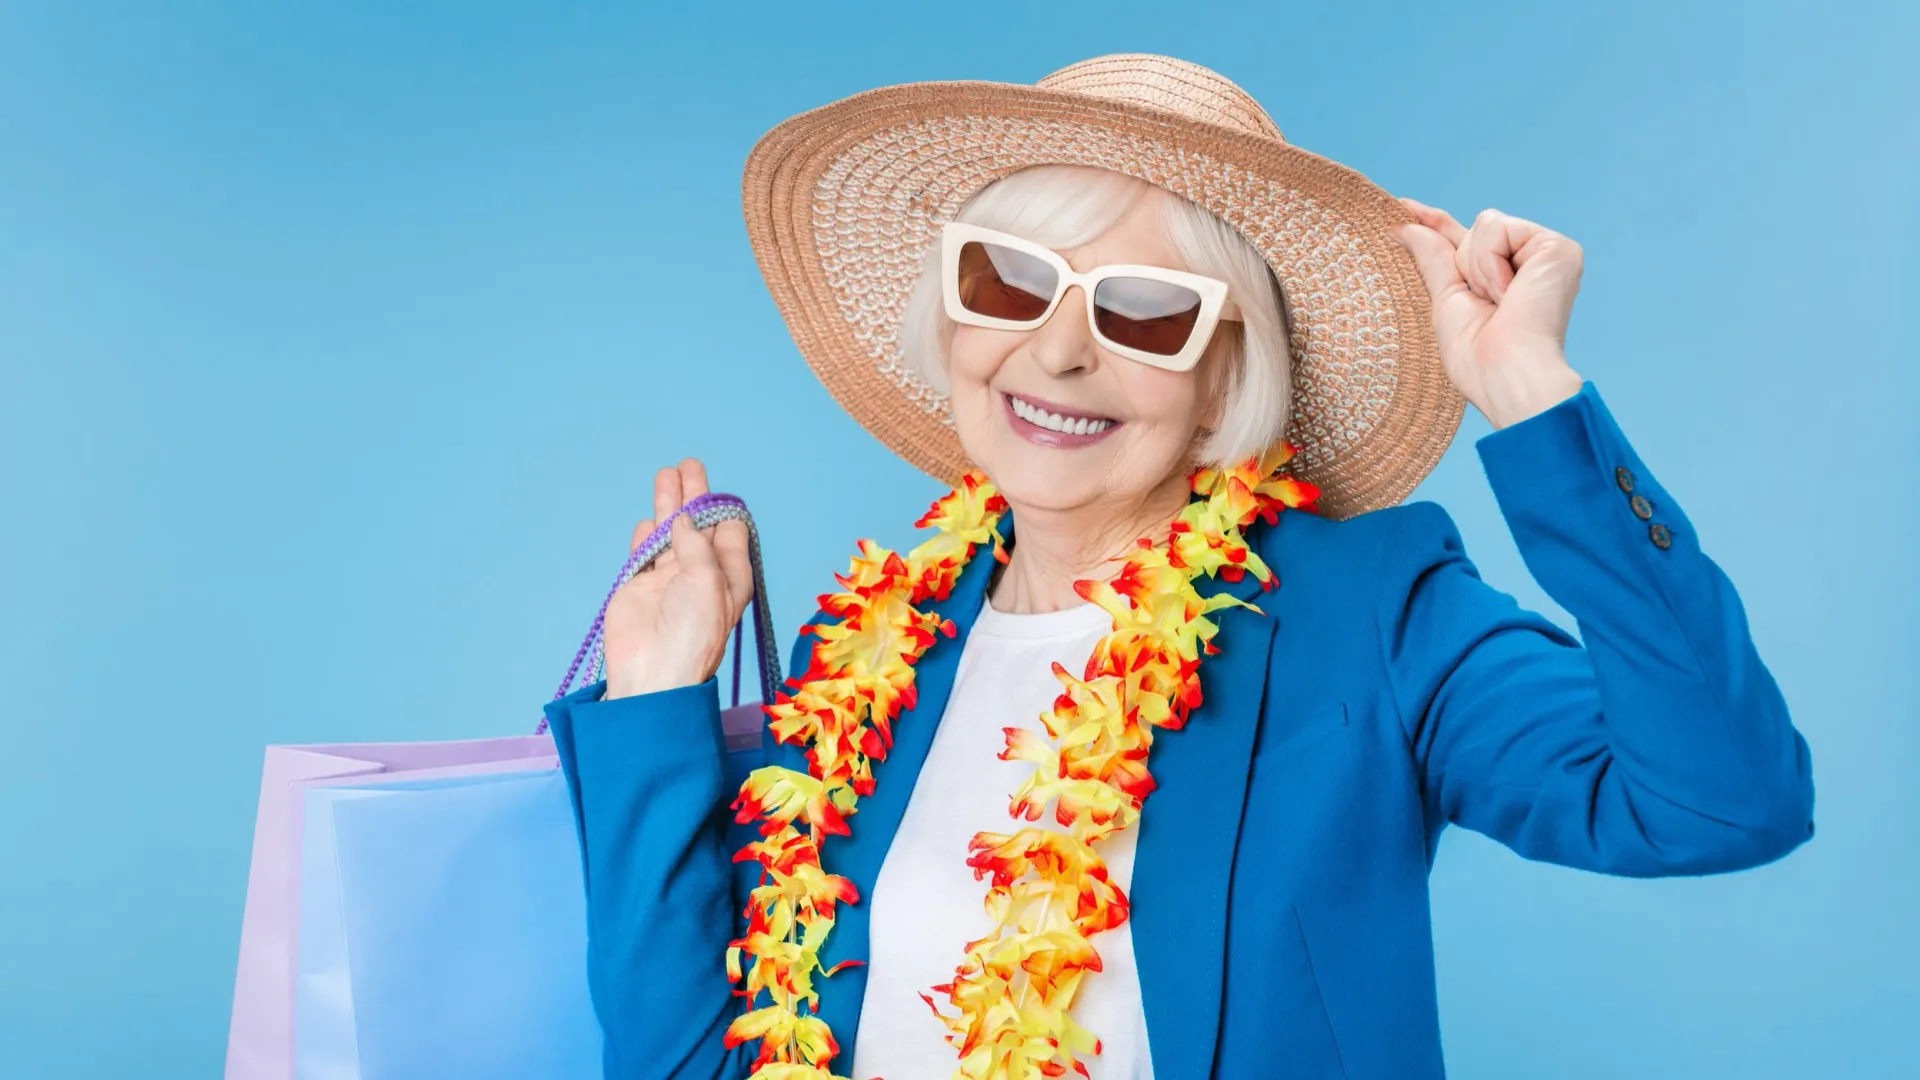 Радоваться жизни можно в любом возрасте. Фото: Inside Creative House / Shutterstock / Fotodom